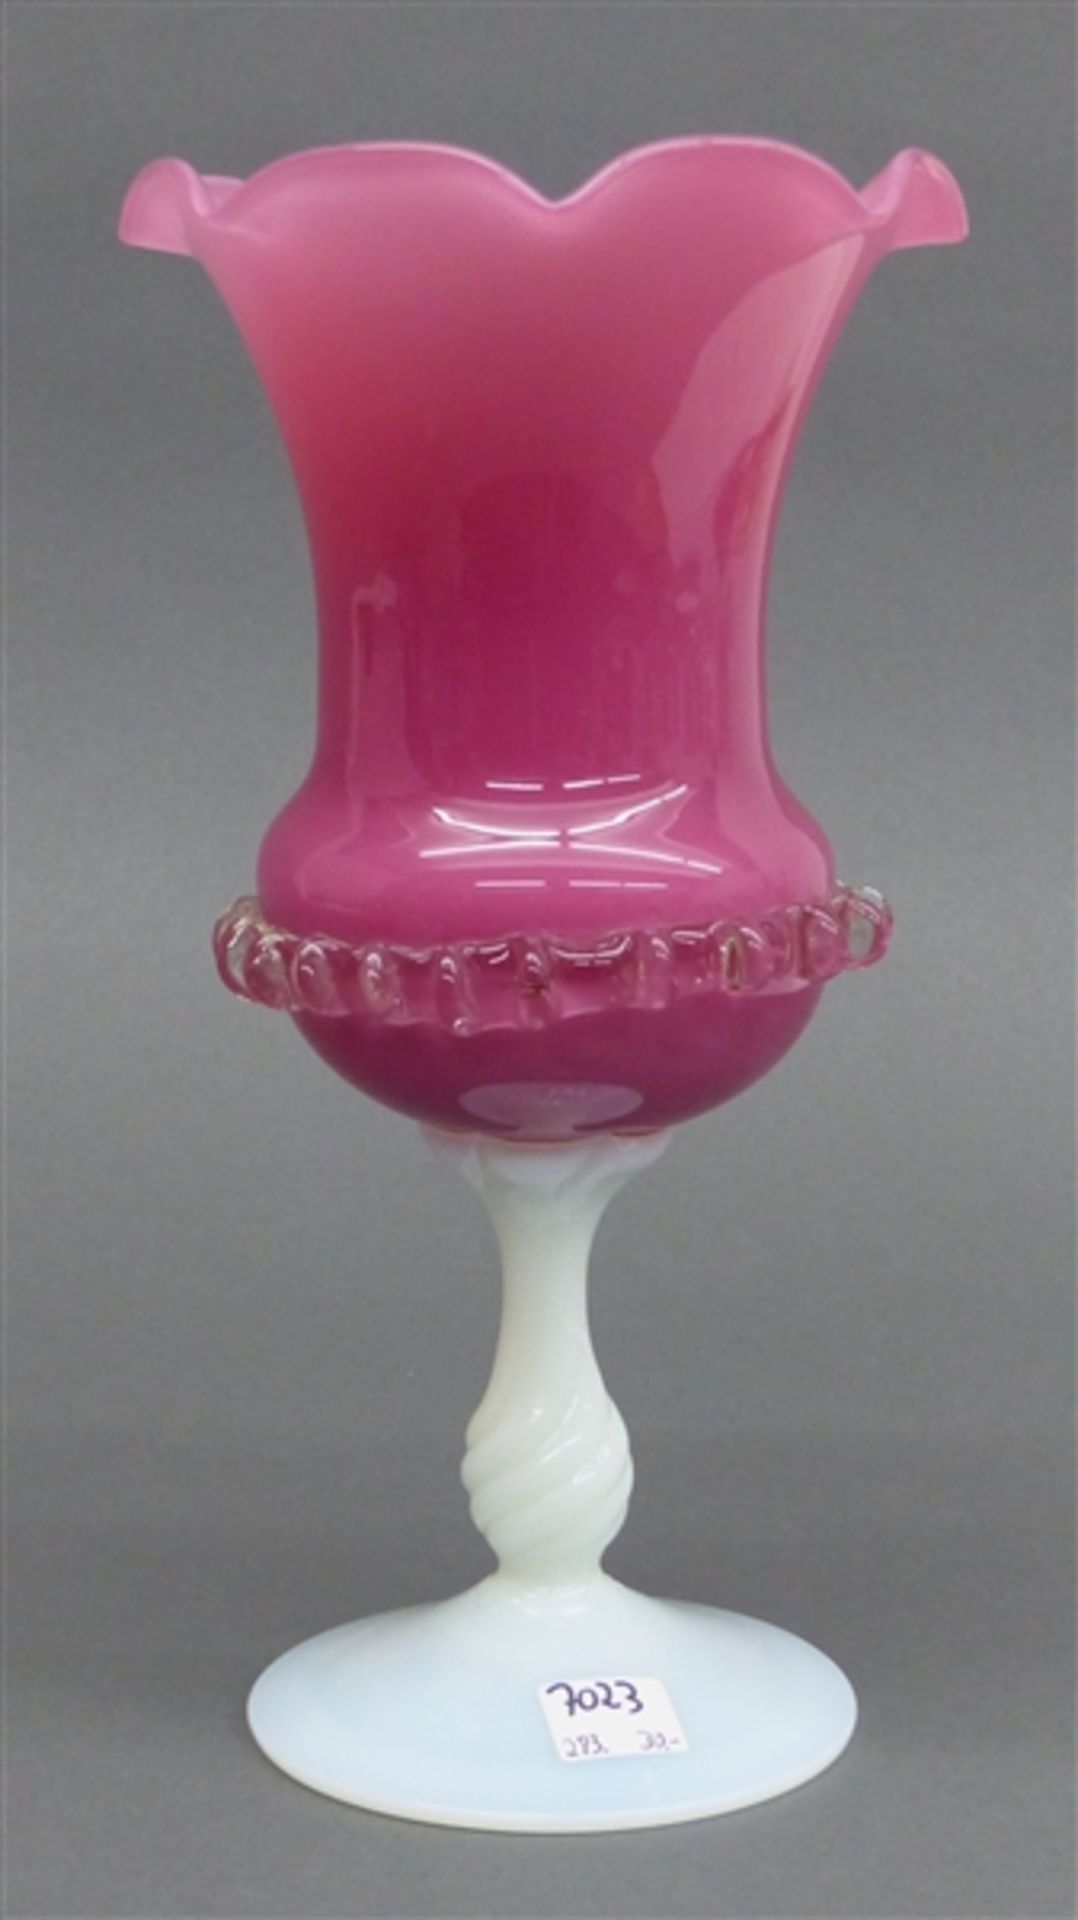 Ziervase rosefarbenes Glas, Milchglasfuß, Wellrand, aufgearbeitetes Dekor, 20. Jh., h 27 cm,